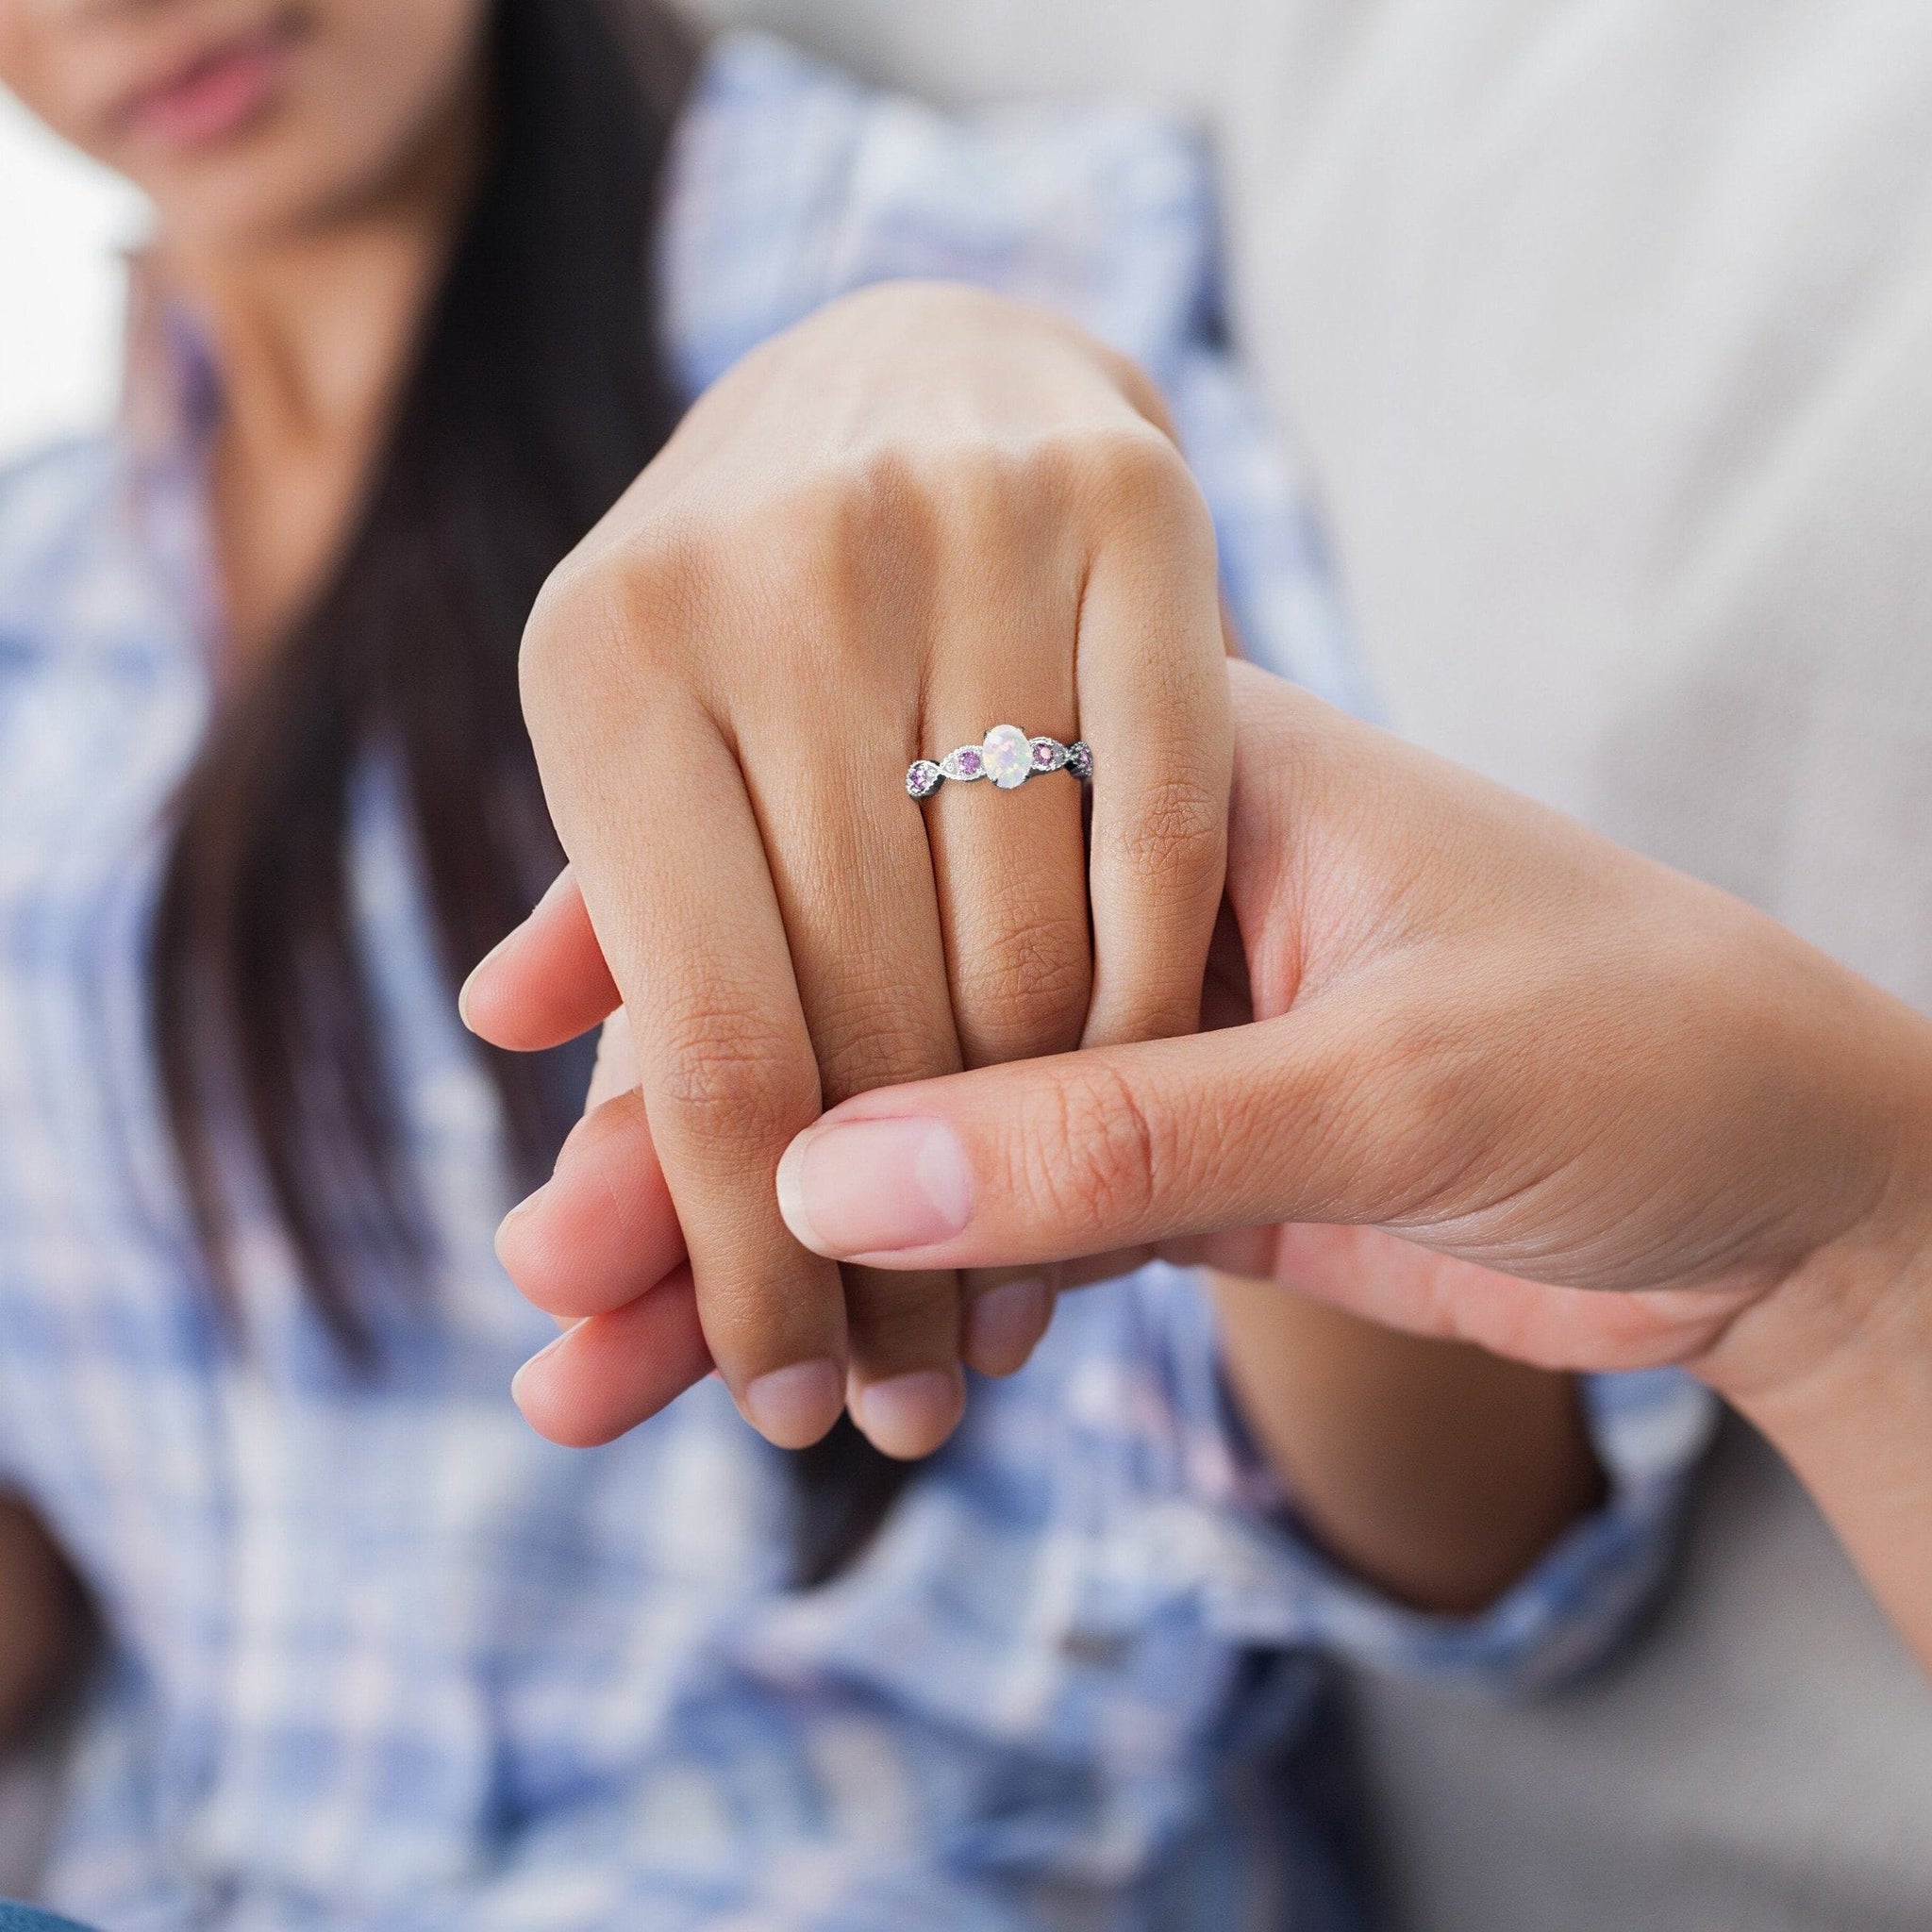 Кольцо когда замужем. Кольцо для Помолвки. Кольцо для предложения девушке. Кольцо на руке девушки. Кольцо на пальце.